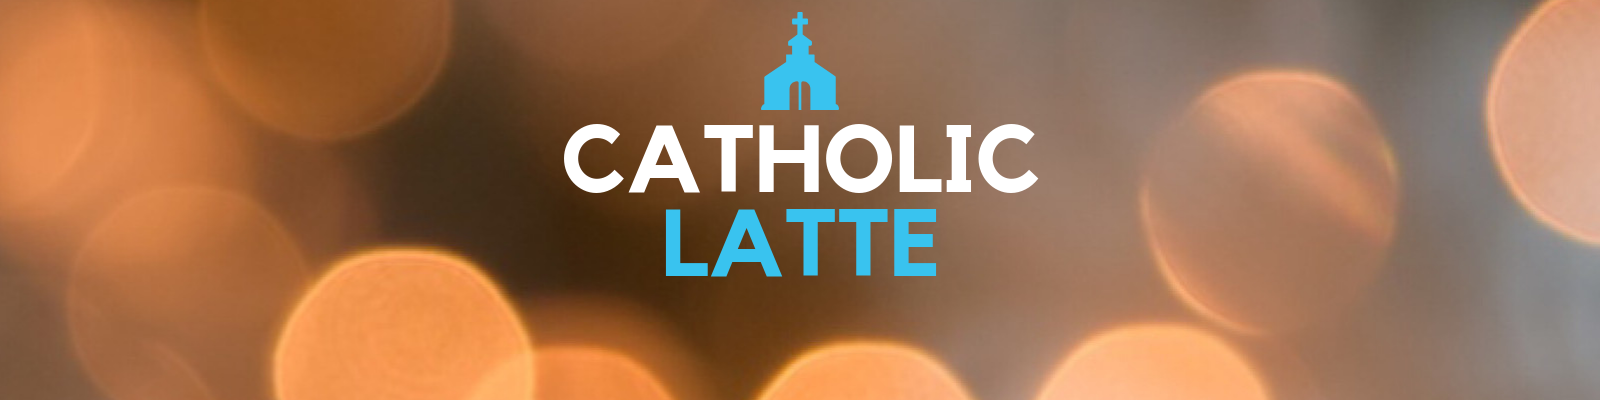 Catholic Latte Banner Photo